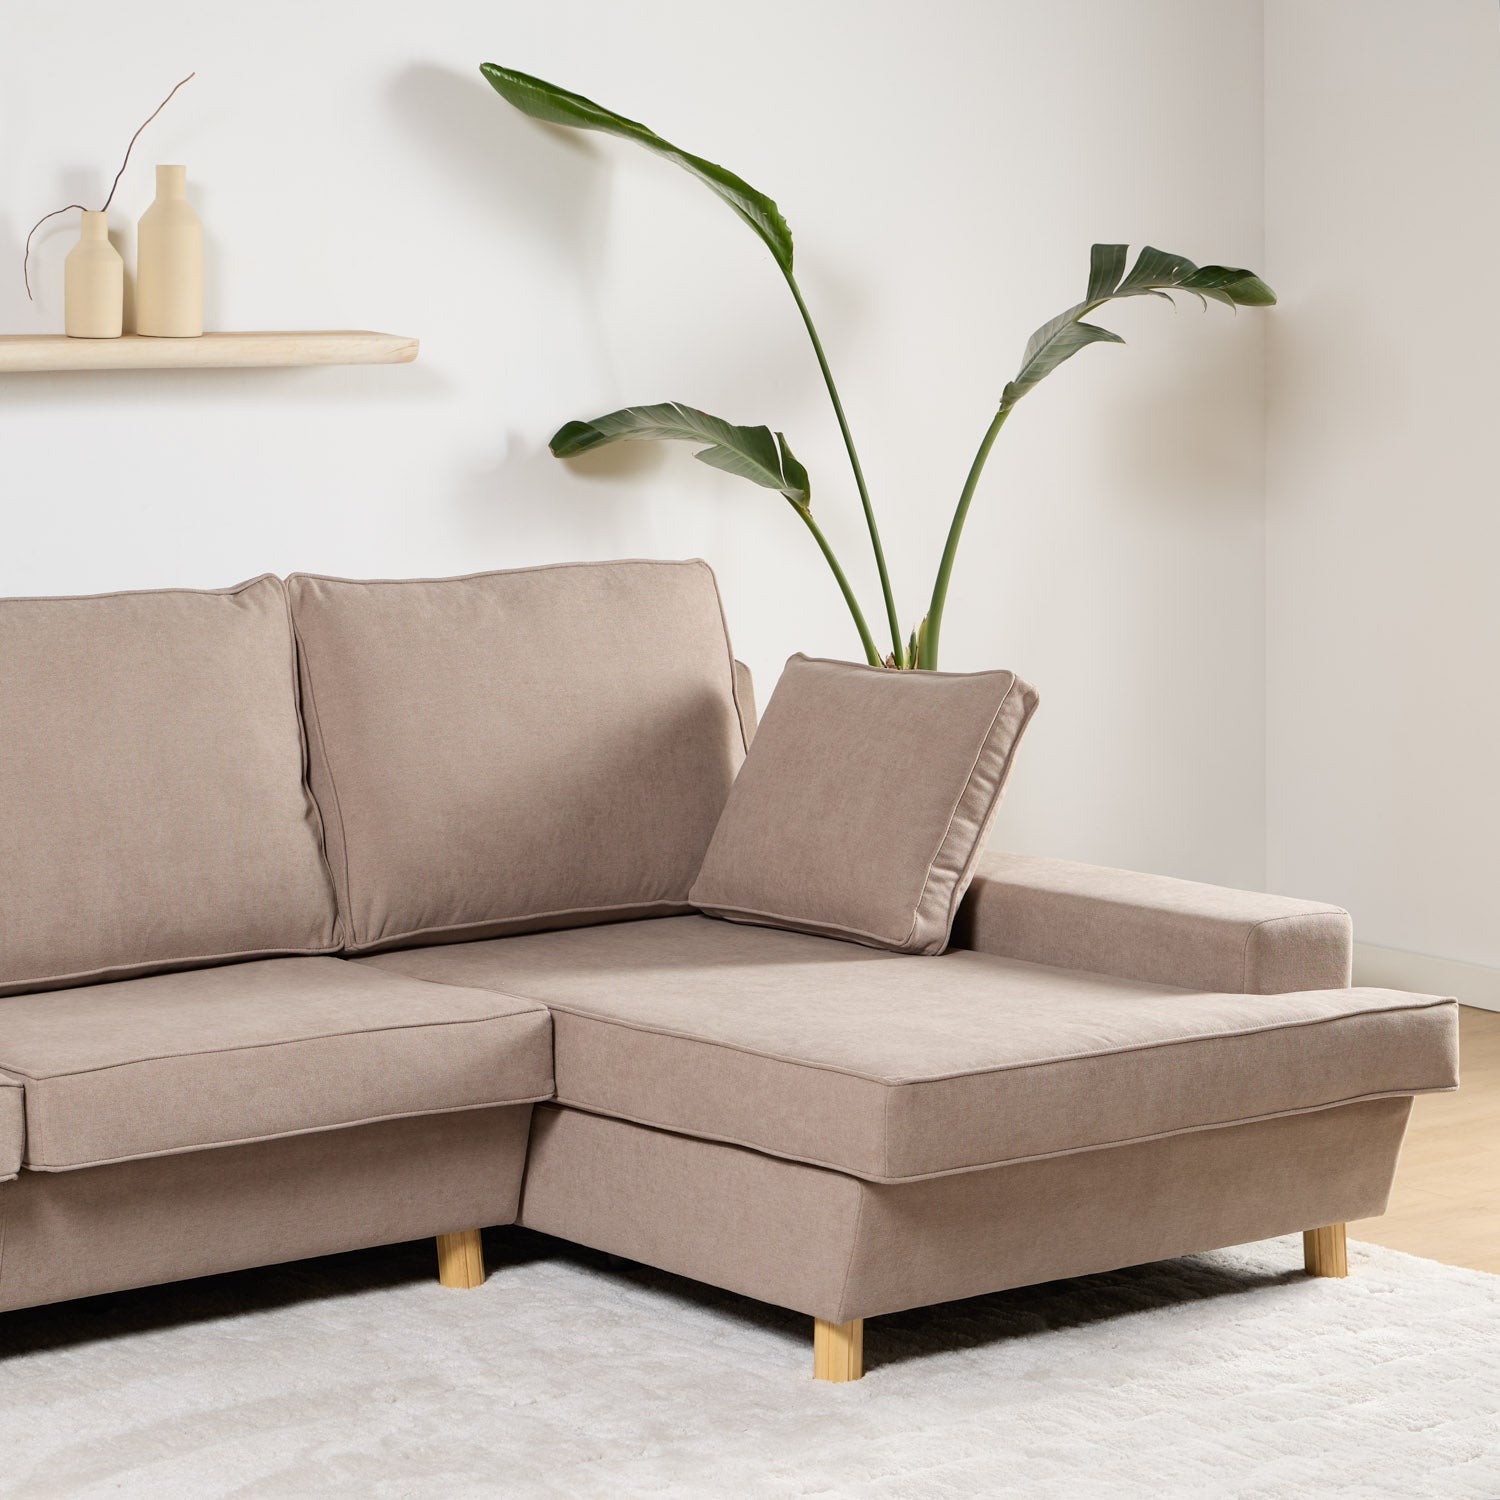 Sofa-Durian-Detalle-Chaise-Longue.jpg__PID:491a909c-2050-4d2c-87c6-171fa3676930